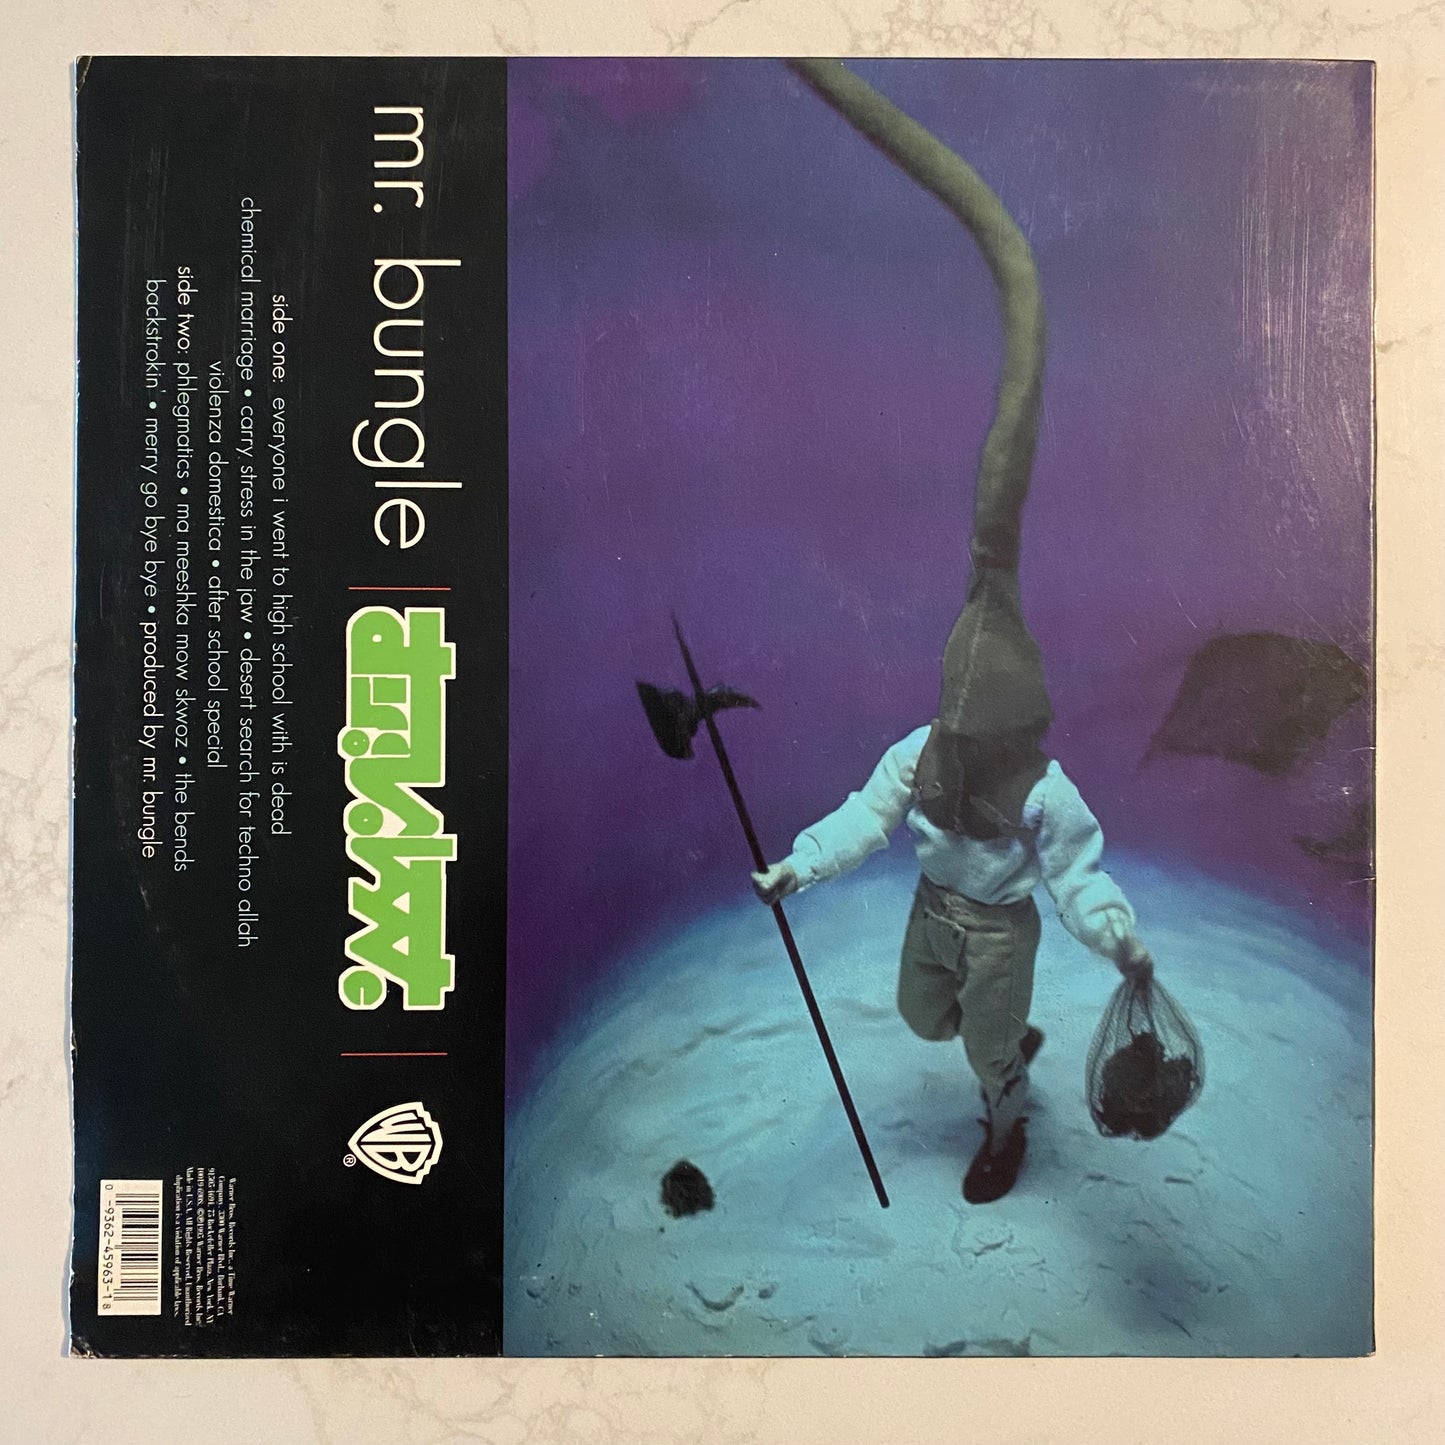 Mr. Bungle - Disco Volante (LP, Album + 7", Promo)